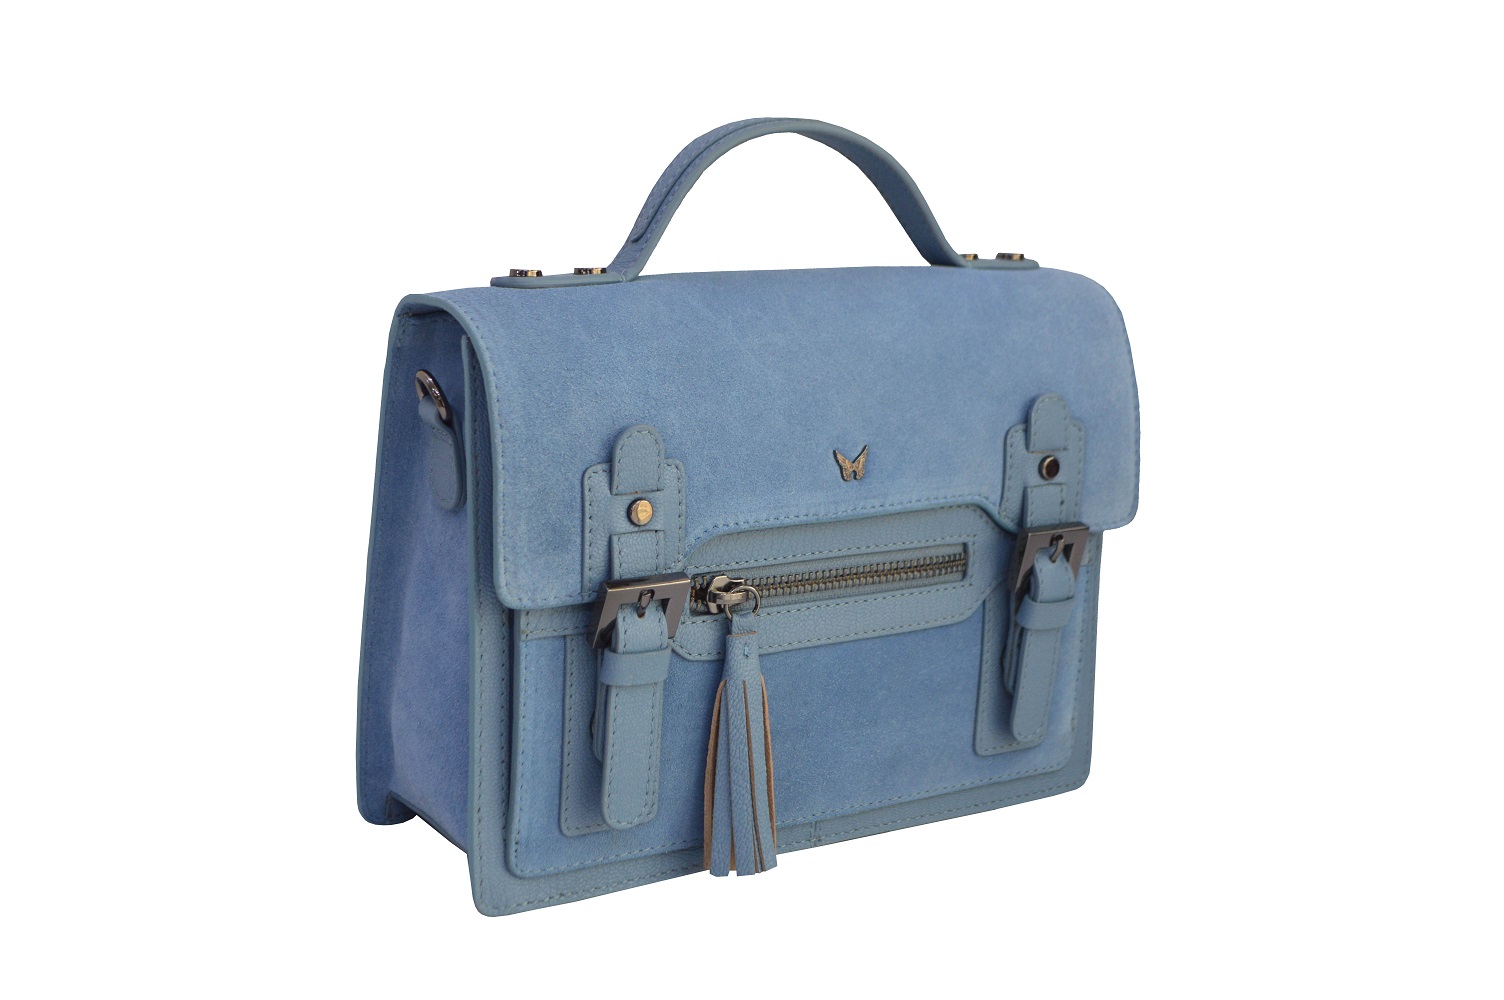 Trendy women sling bag | latest design - Buy online